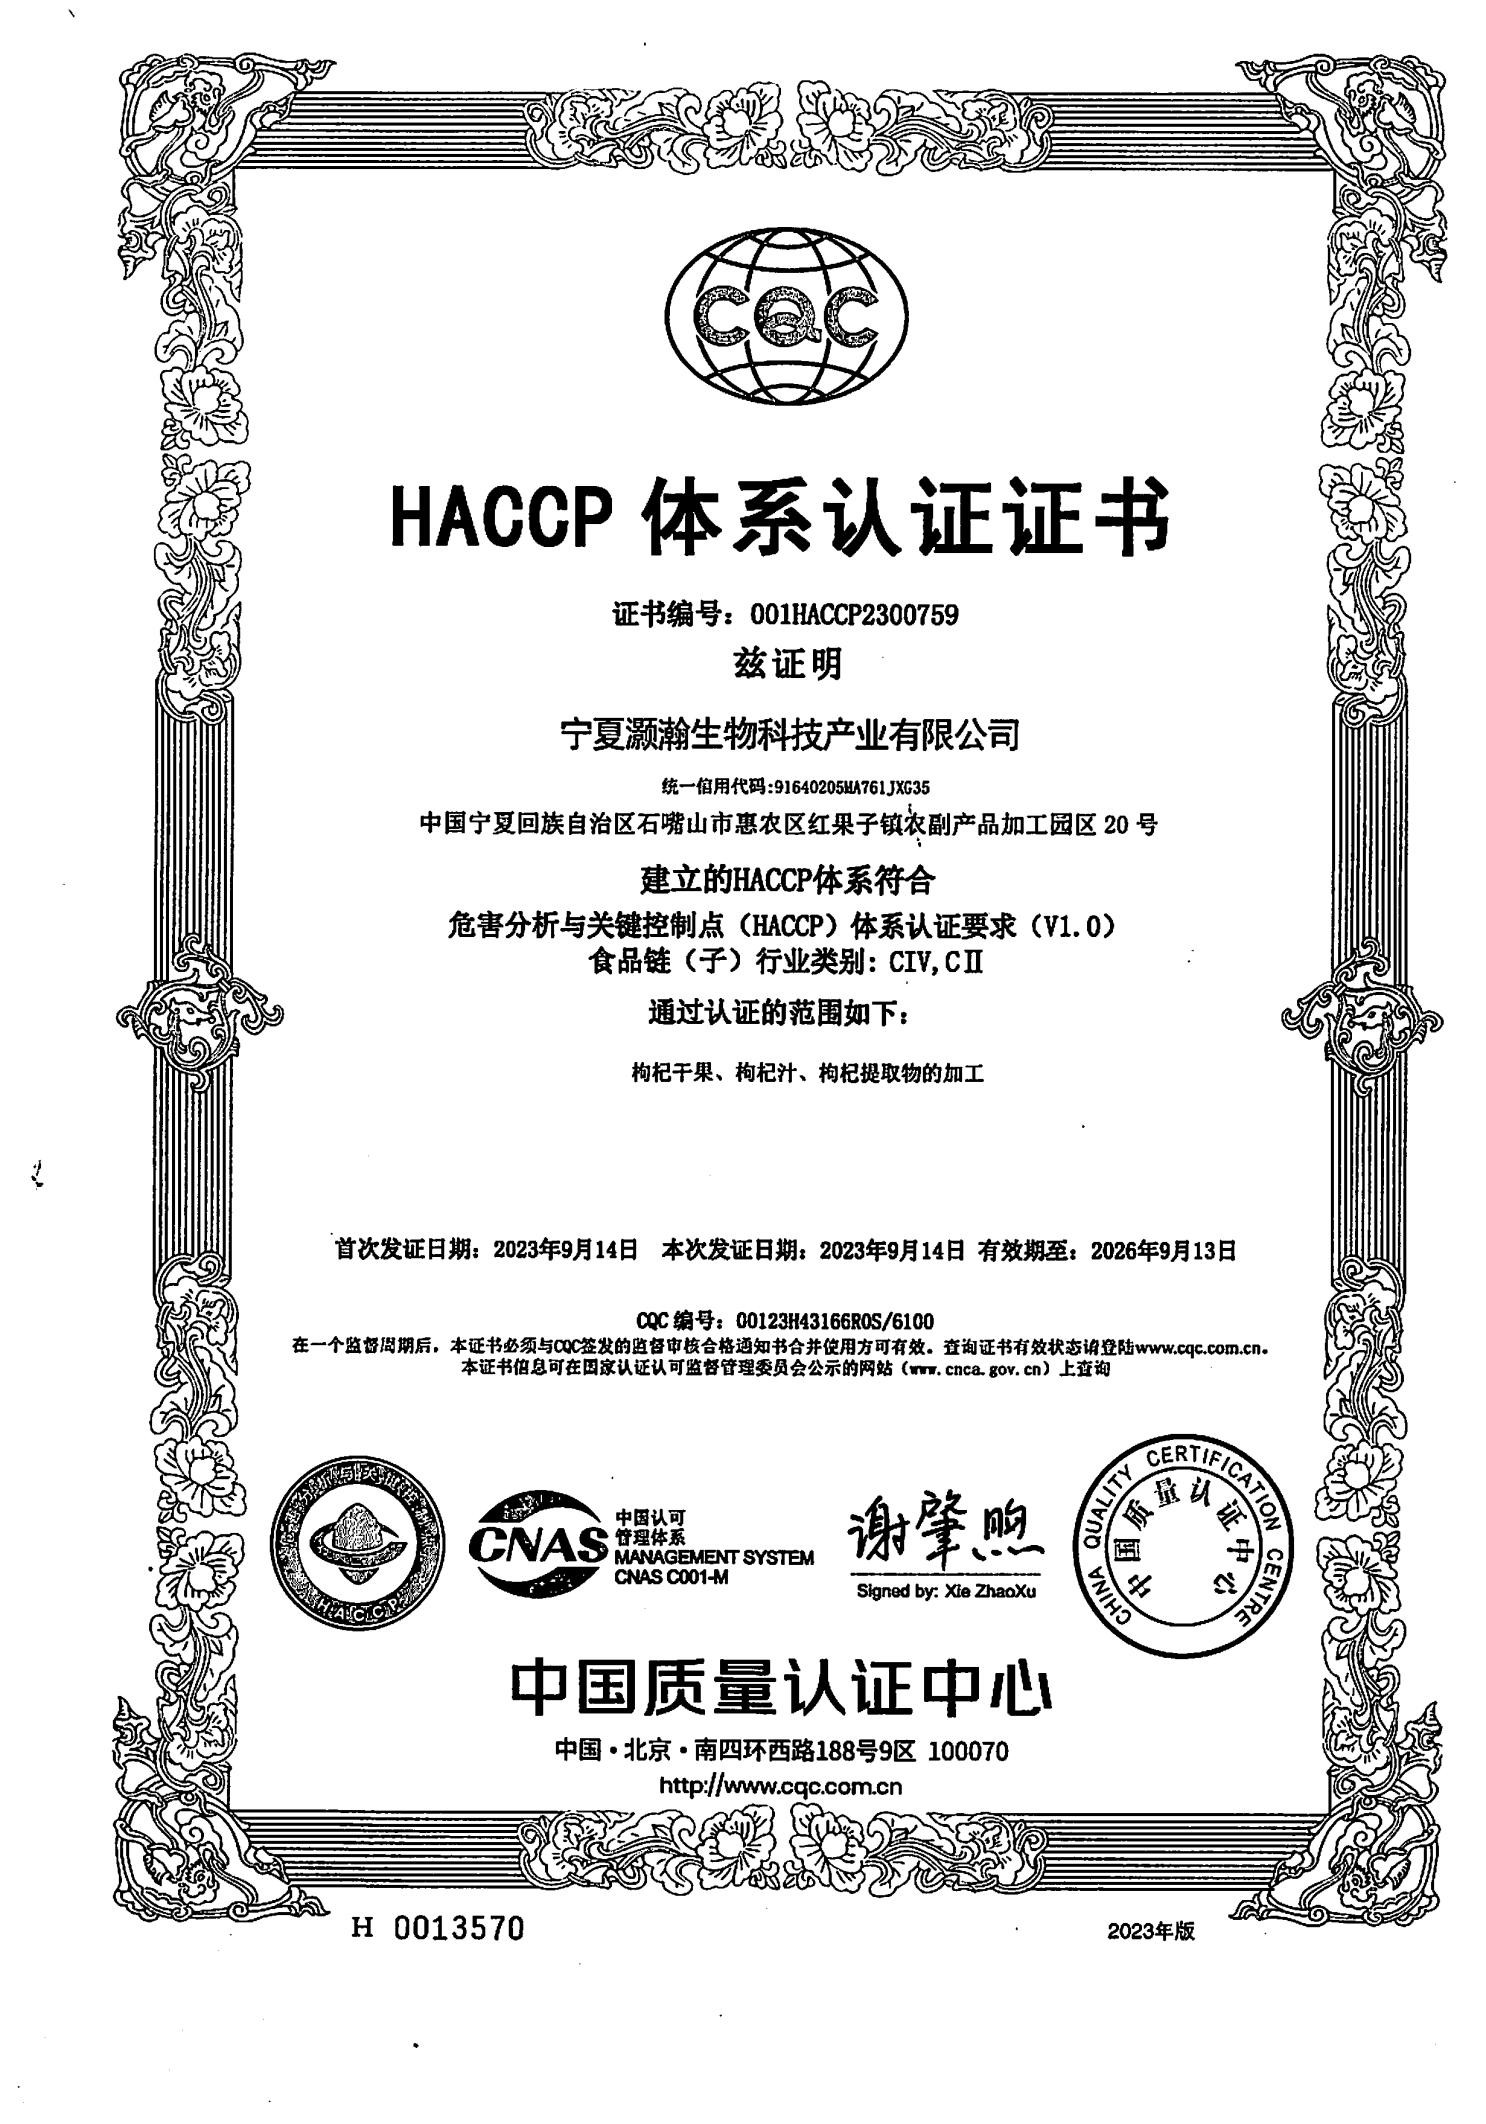 HACCP质量体系证书-2026.913